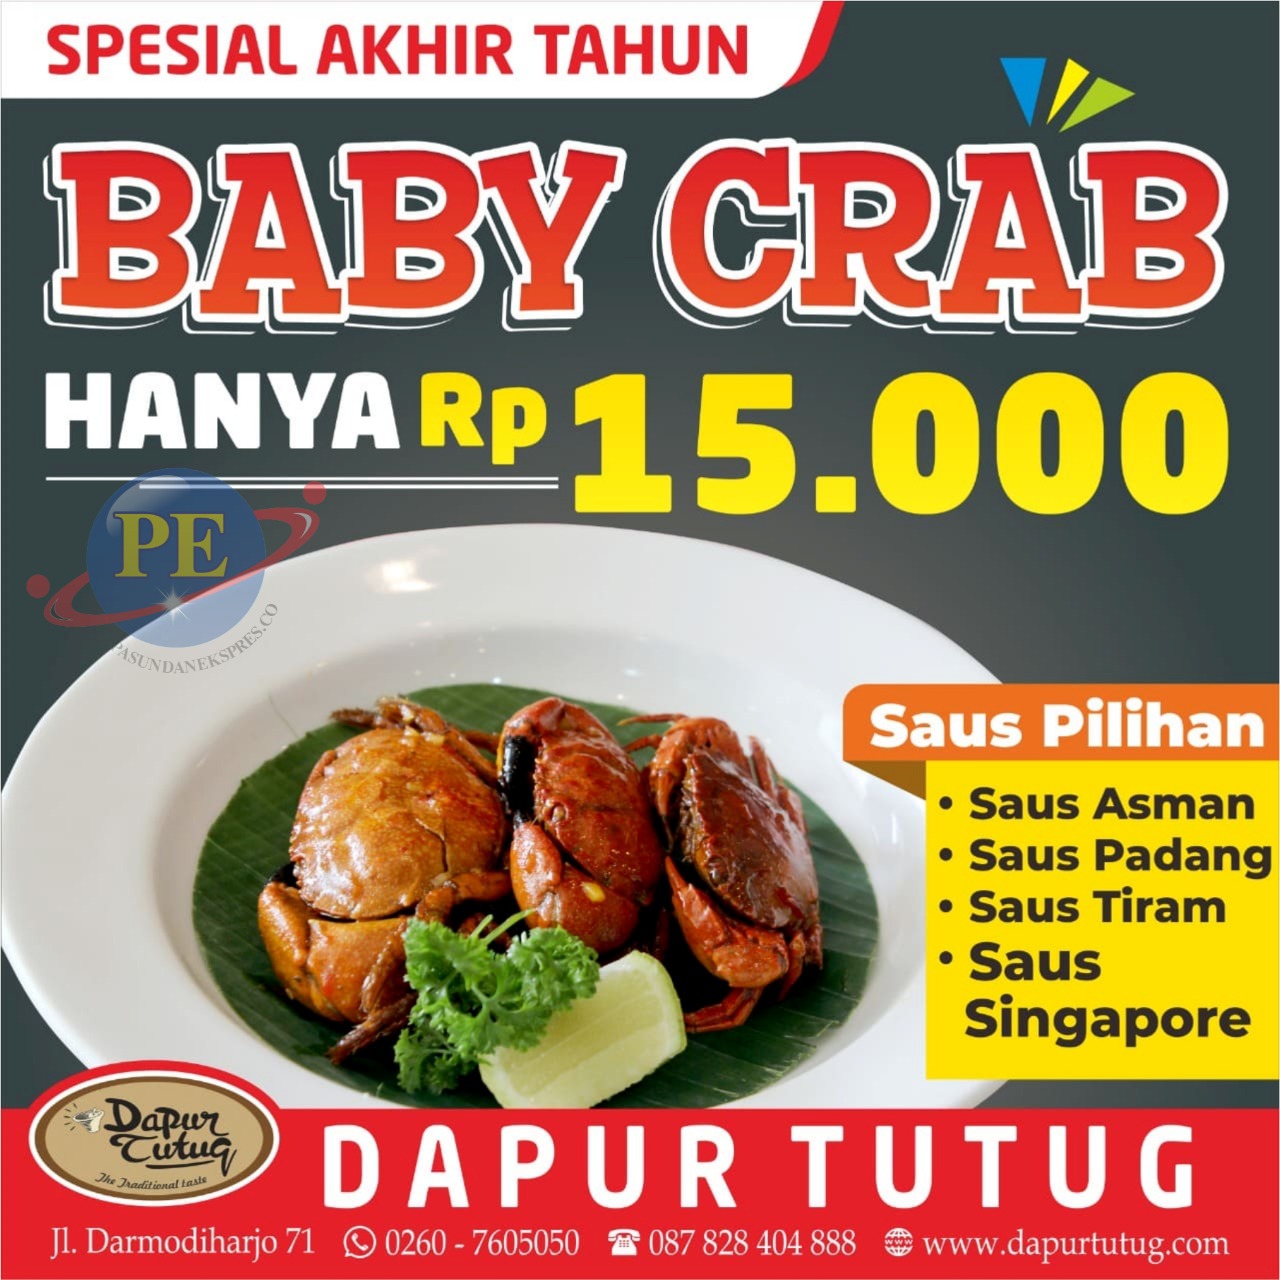 Wah Murah Banget! Baby Crab di Dapur Tutug Hanya Rp15.000